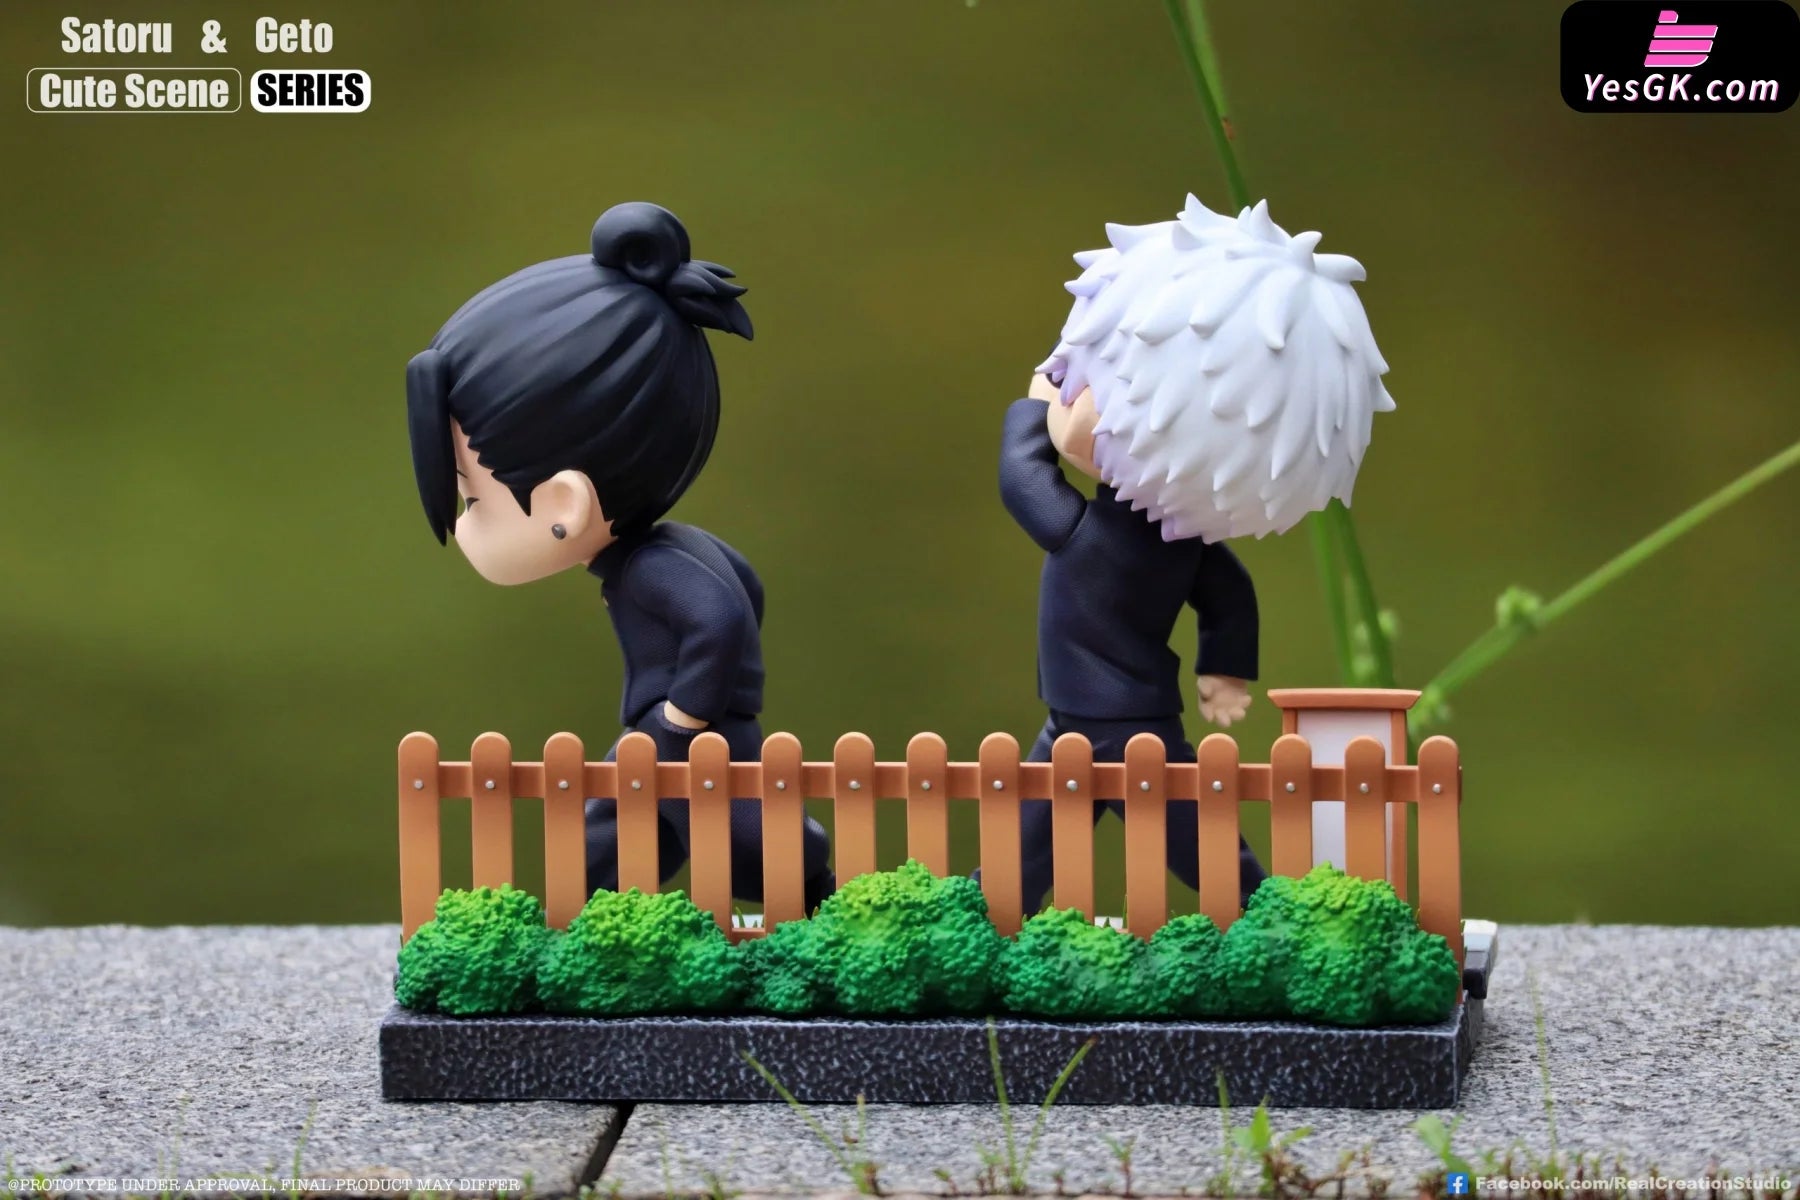 Jujutsu Kaisen Cute Scene Series: Gojo Satoru & Suguru Geto Street Gang Statue - Real Creation